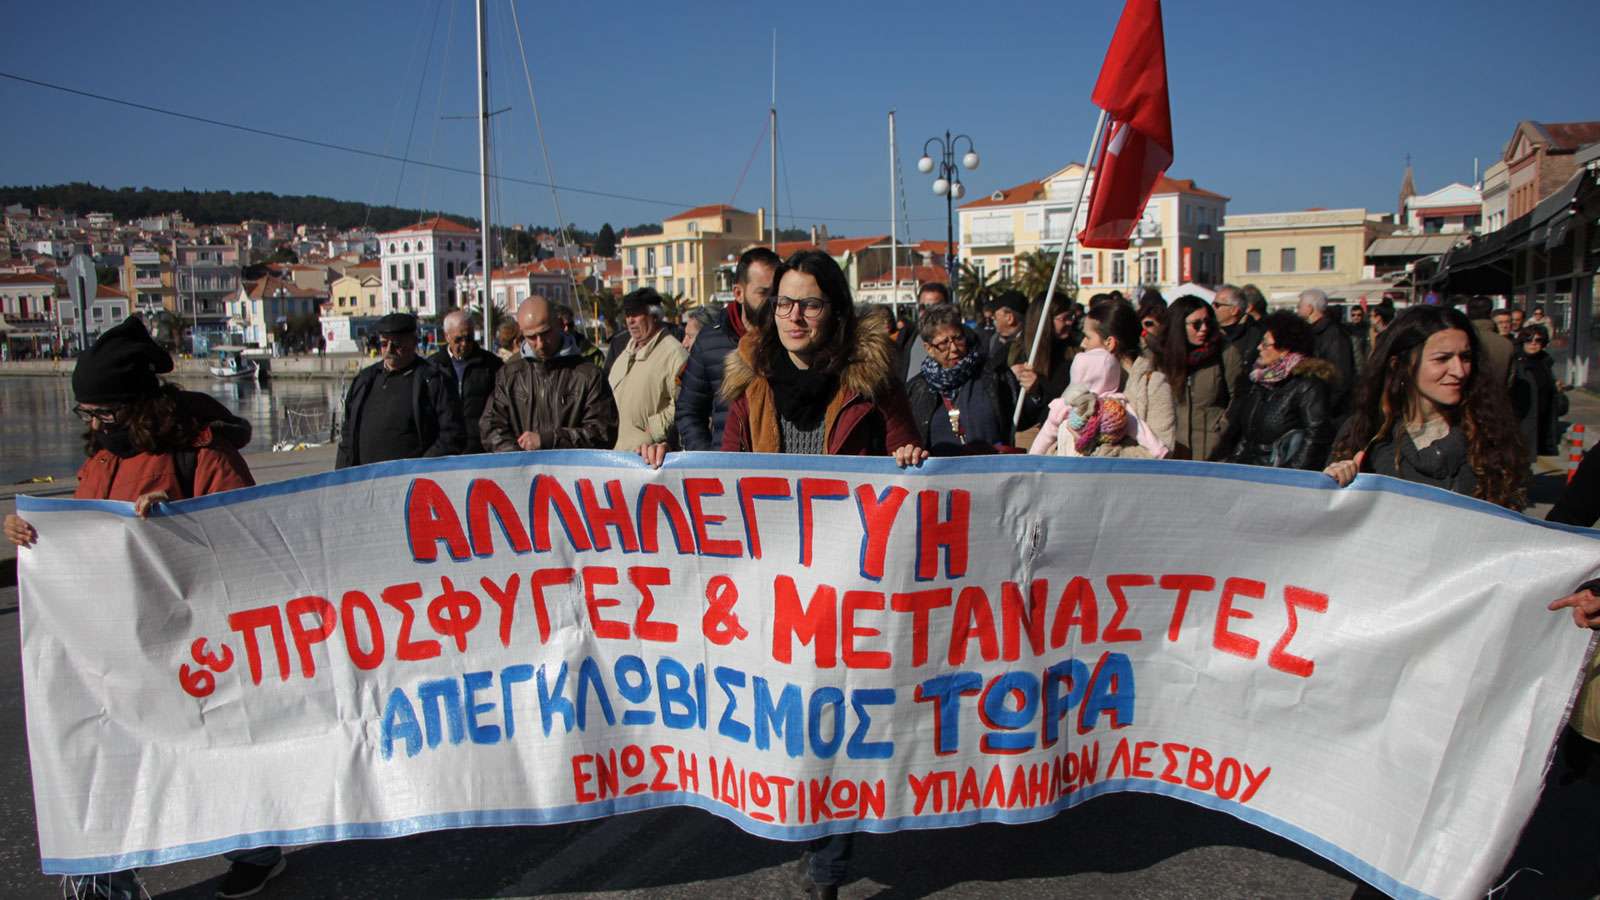 ΛΕΣΒΟΣ-ΣΑΜΟΣ-ΧΙΟΣ Συγκεντρώσεις ενάντια στην πολιτική του εγκλωβισμού και της καταστολής προσφύγων και μεταναστών